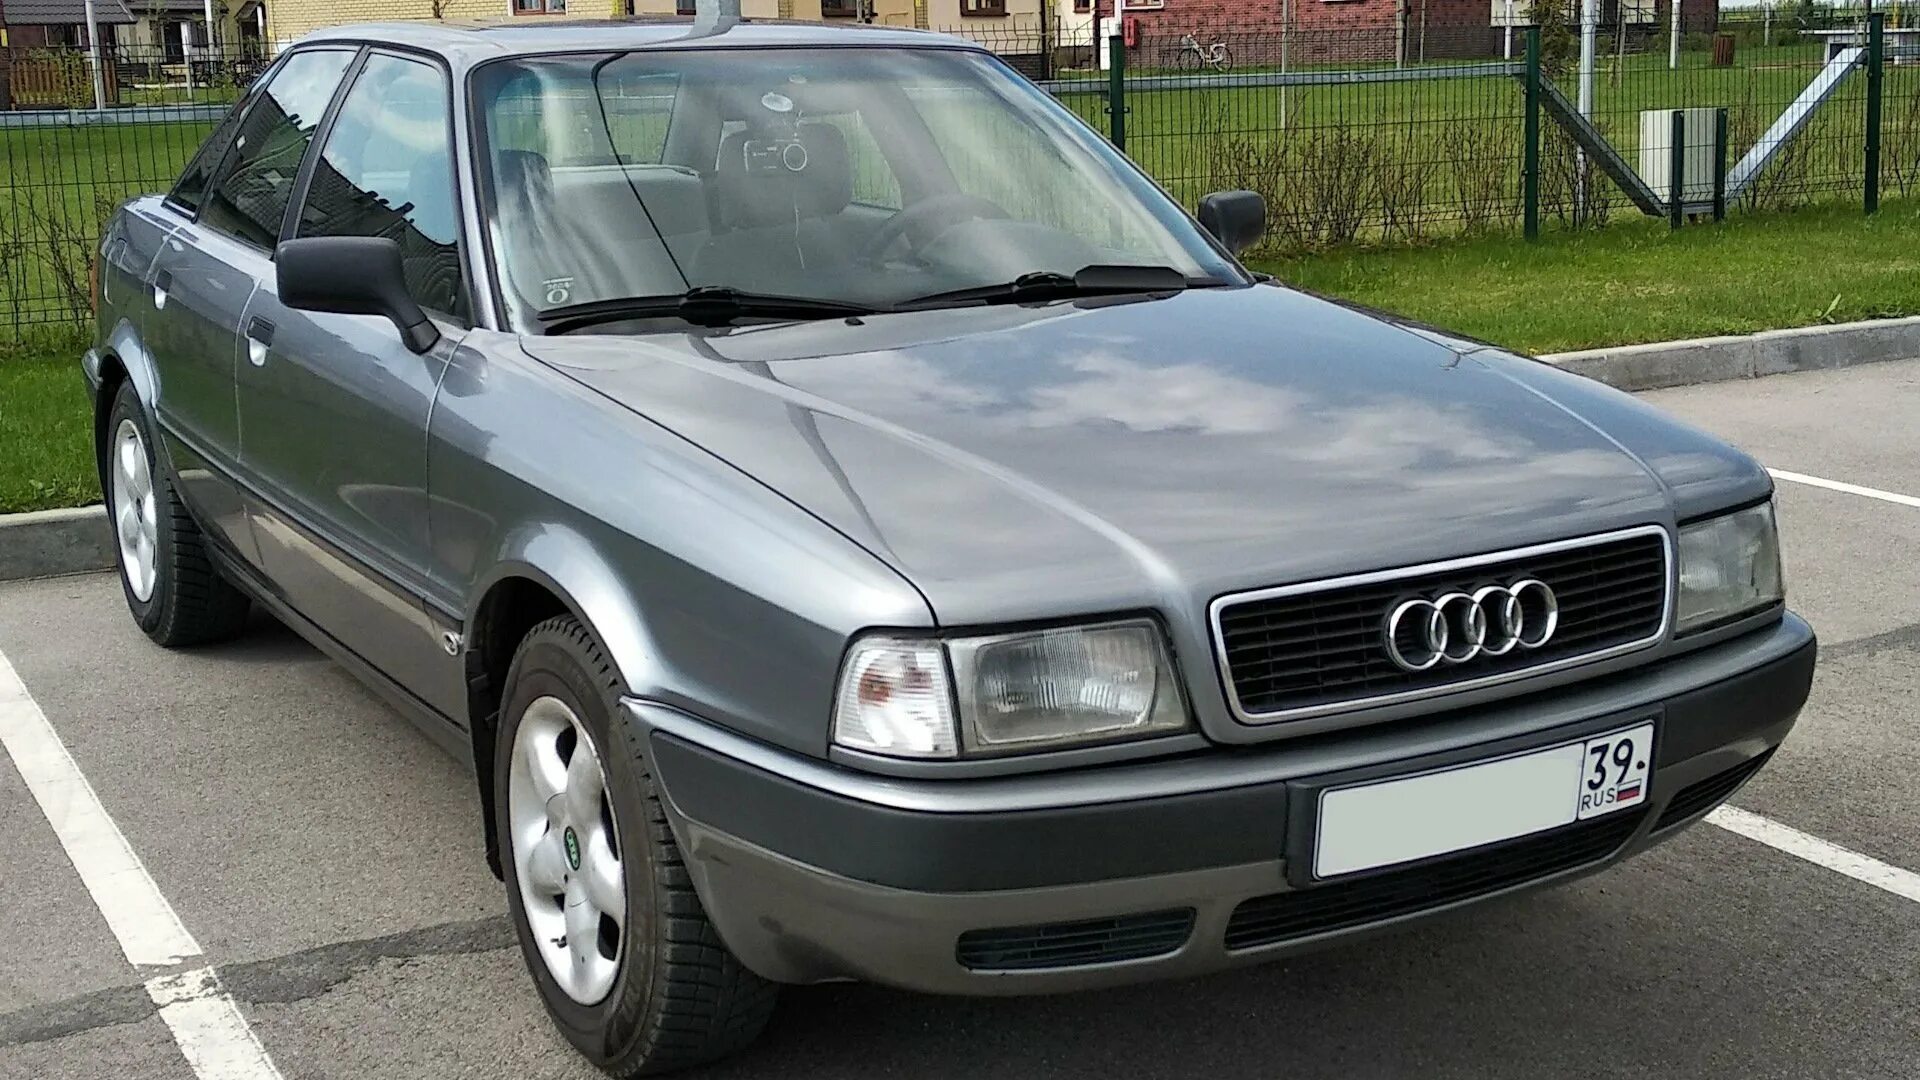 Audi 80 b4 4.2. Ауди 80 б4. Ауди 80 б4 2.0. Audi 80 b4 1996.